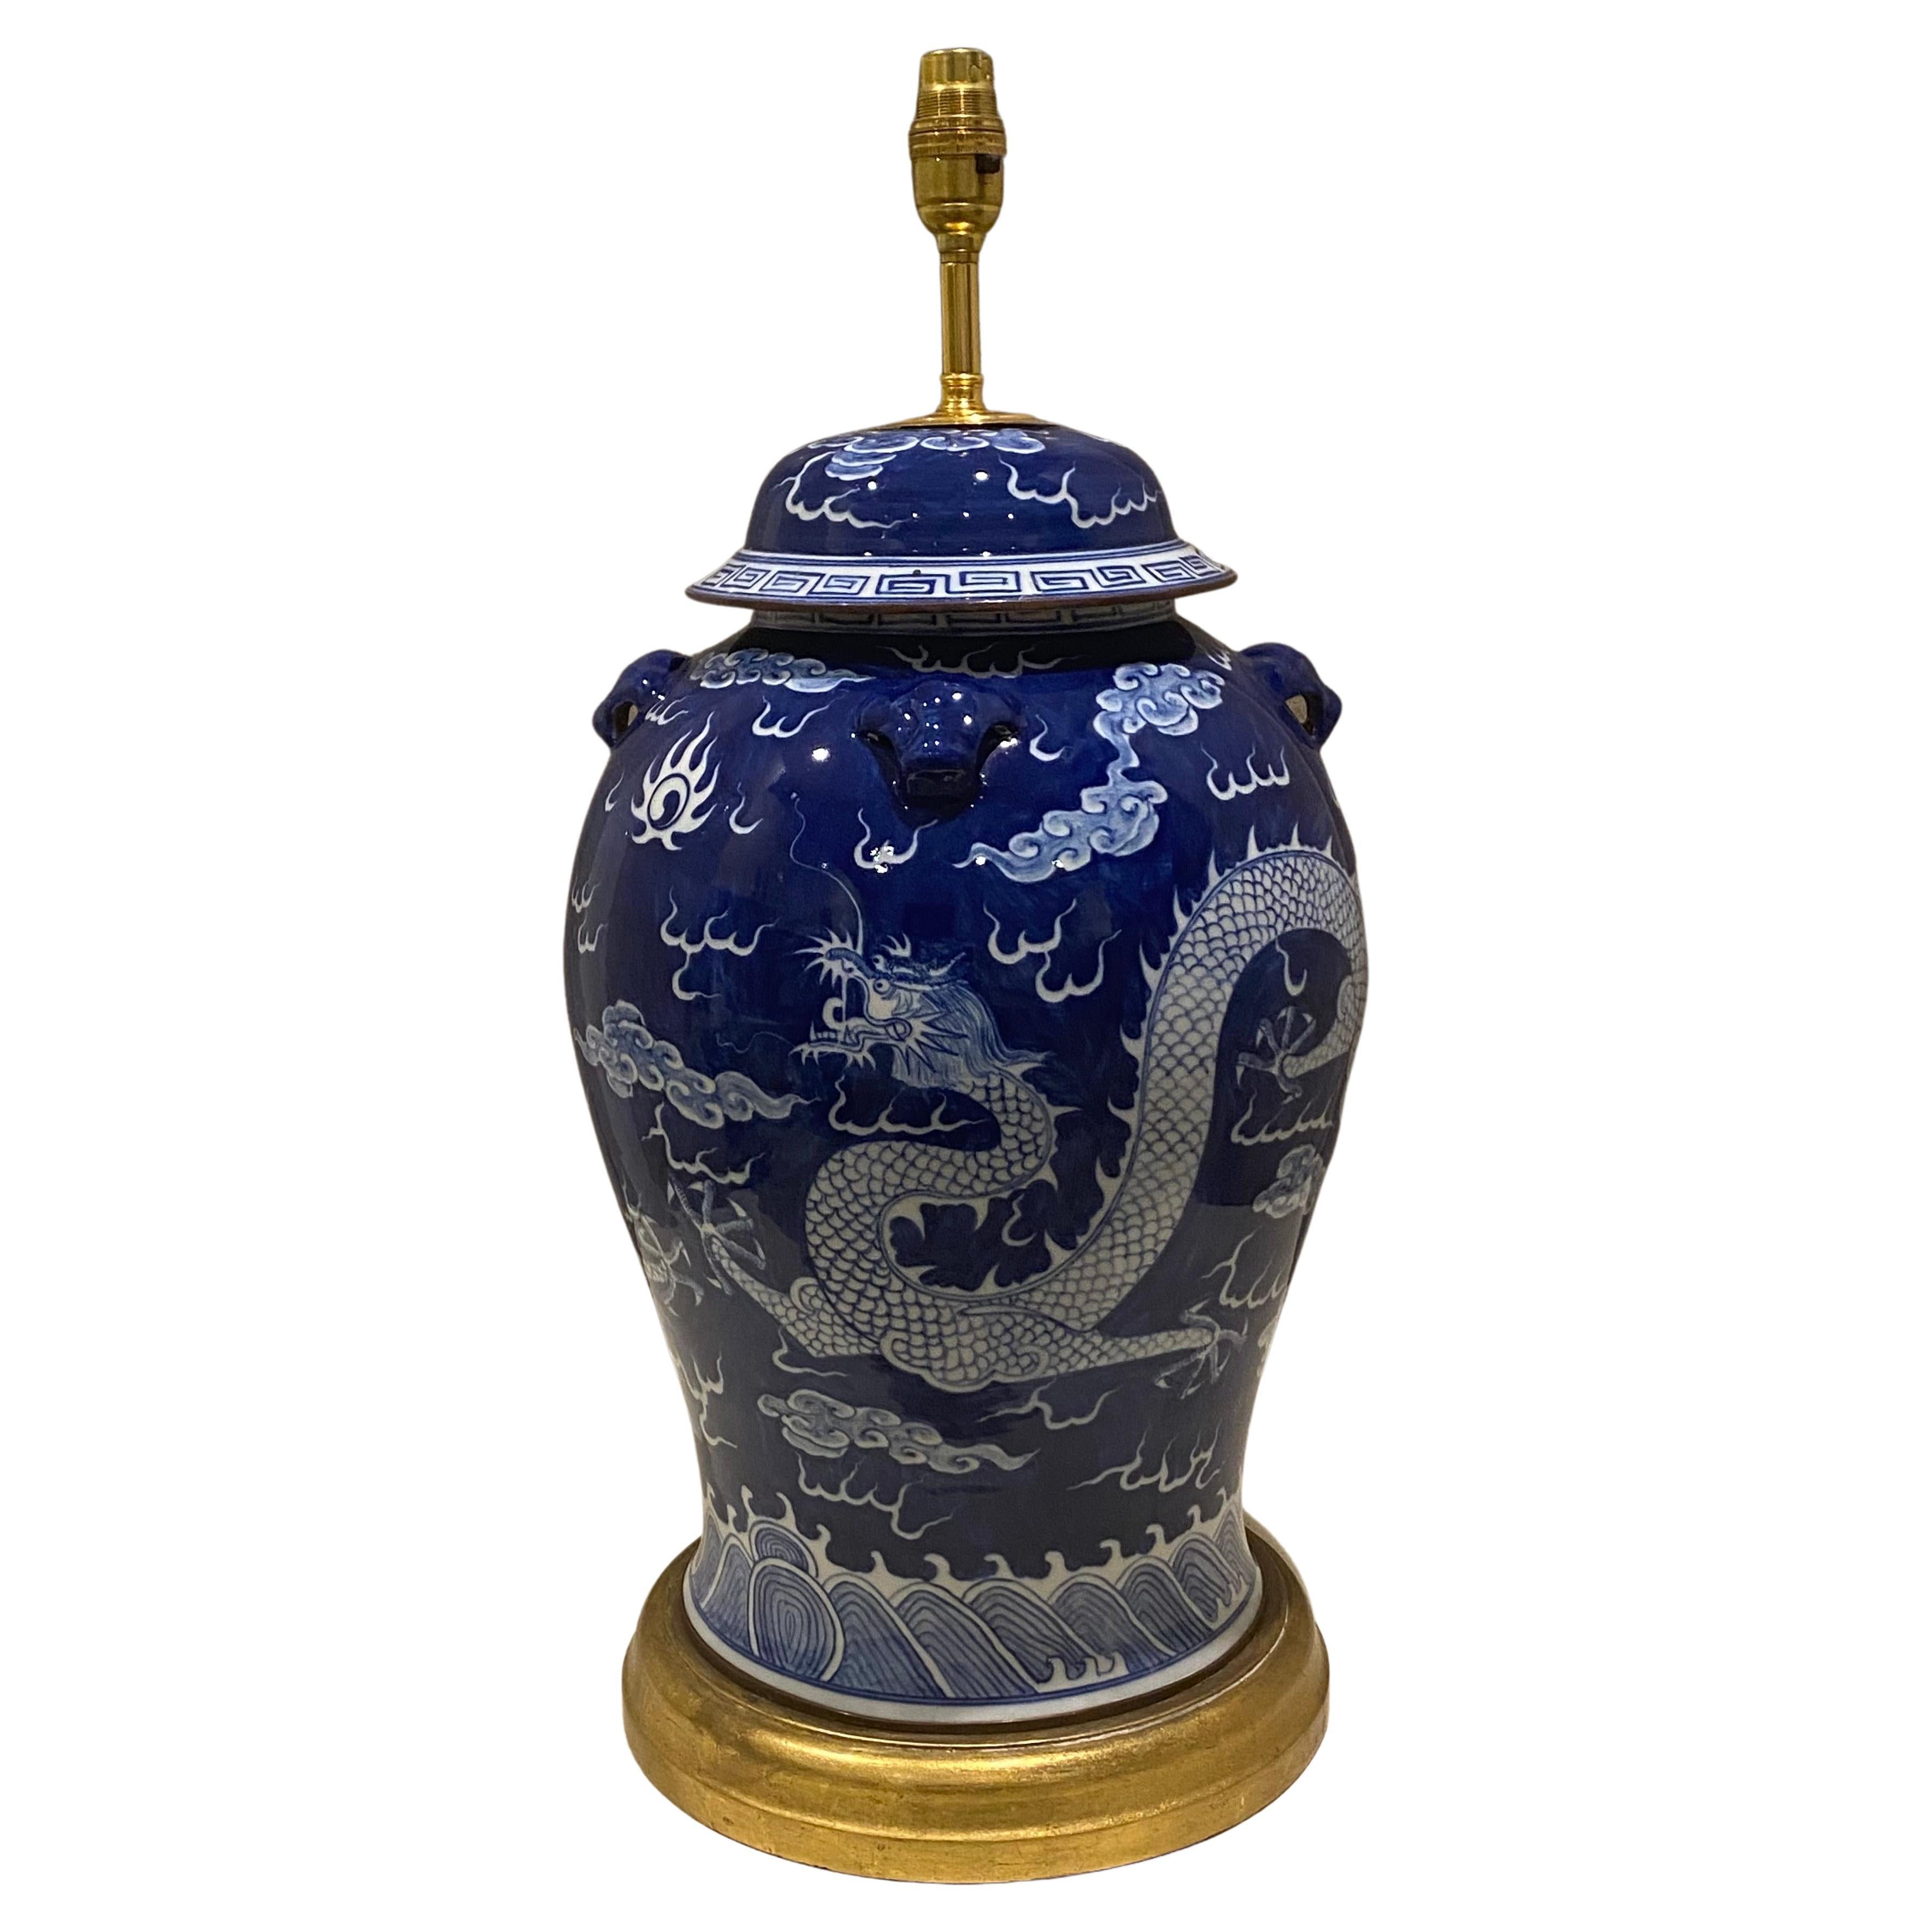 Großes Vintage-Tischlampengefäß aus blauem und weißem Ming-Porzellan